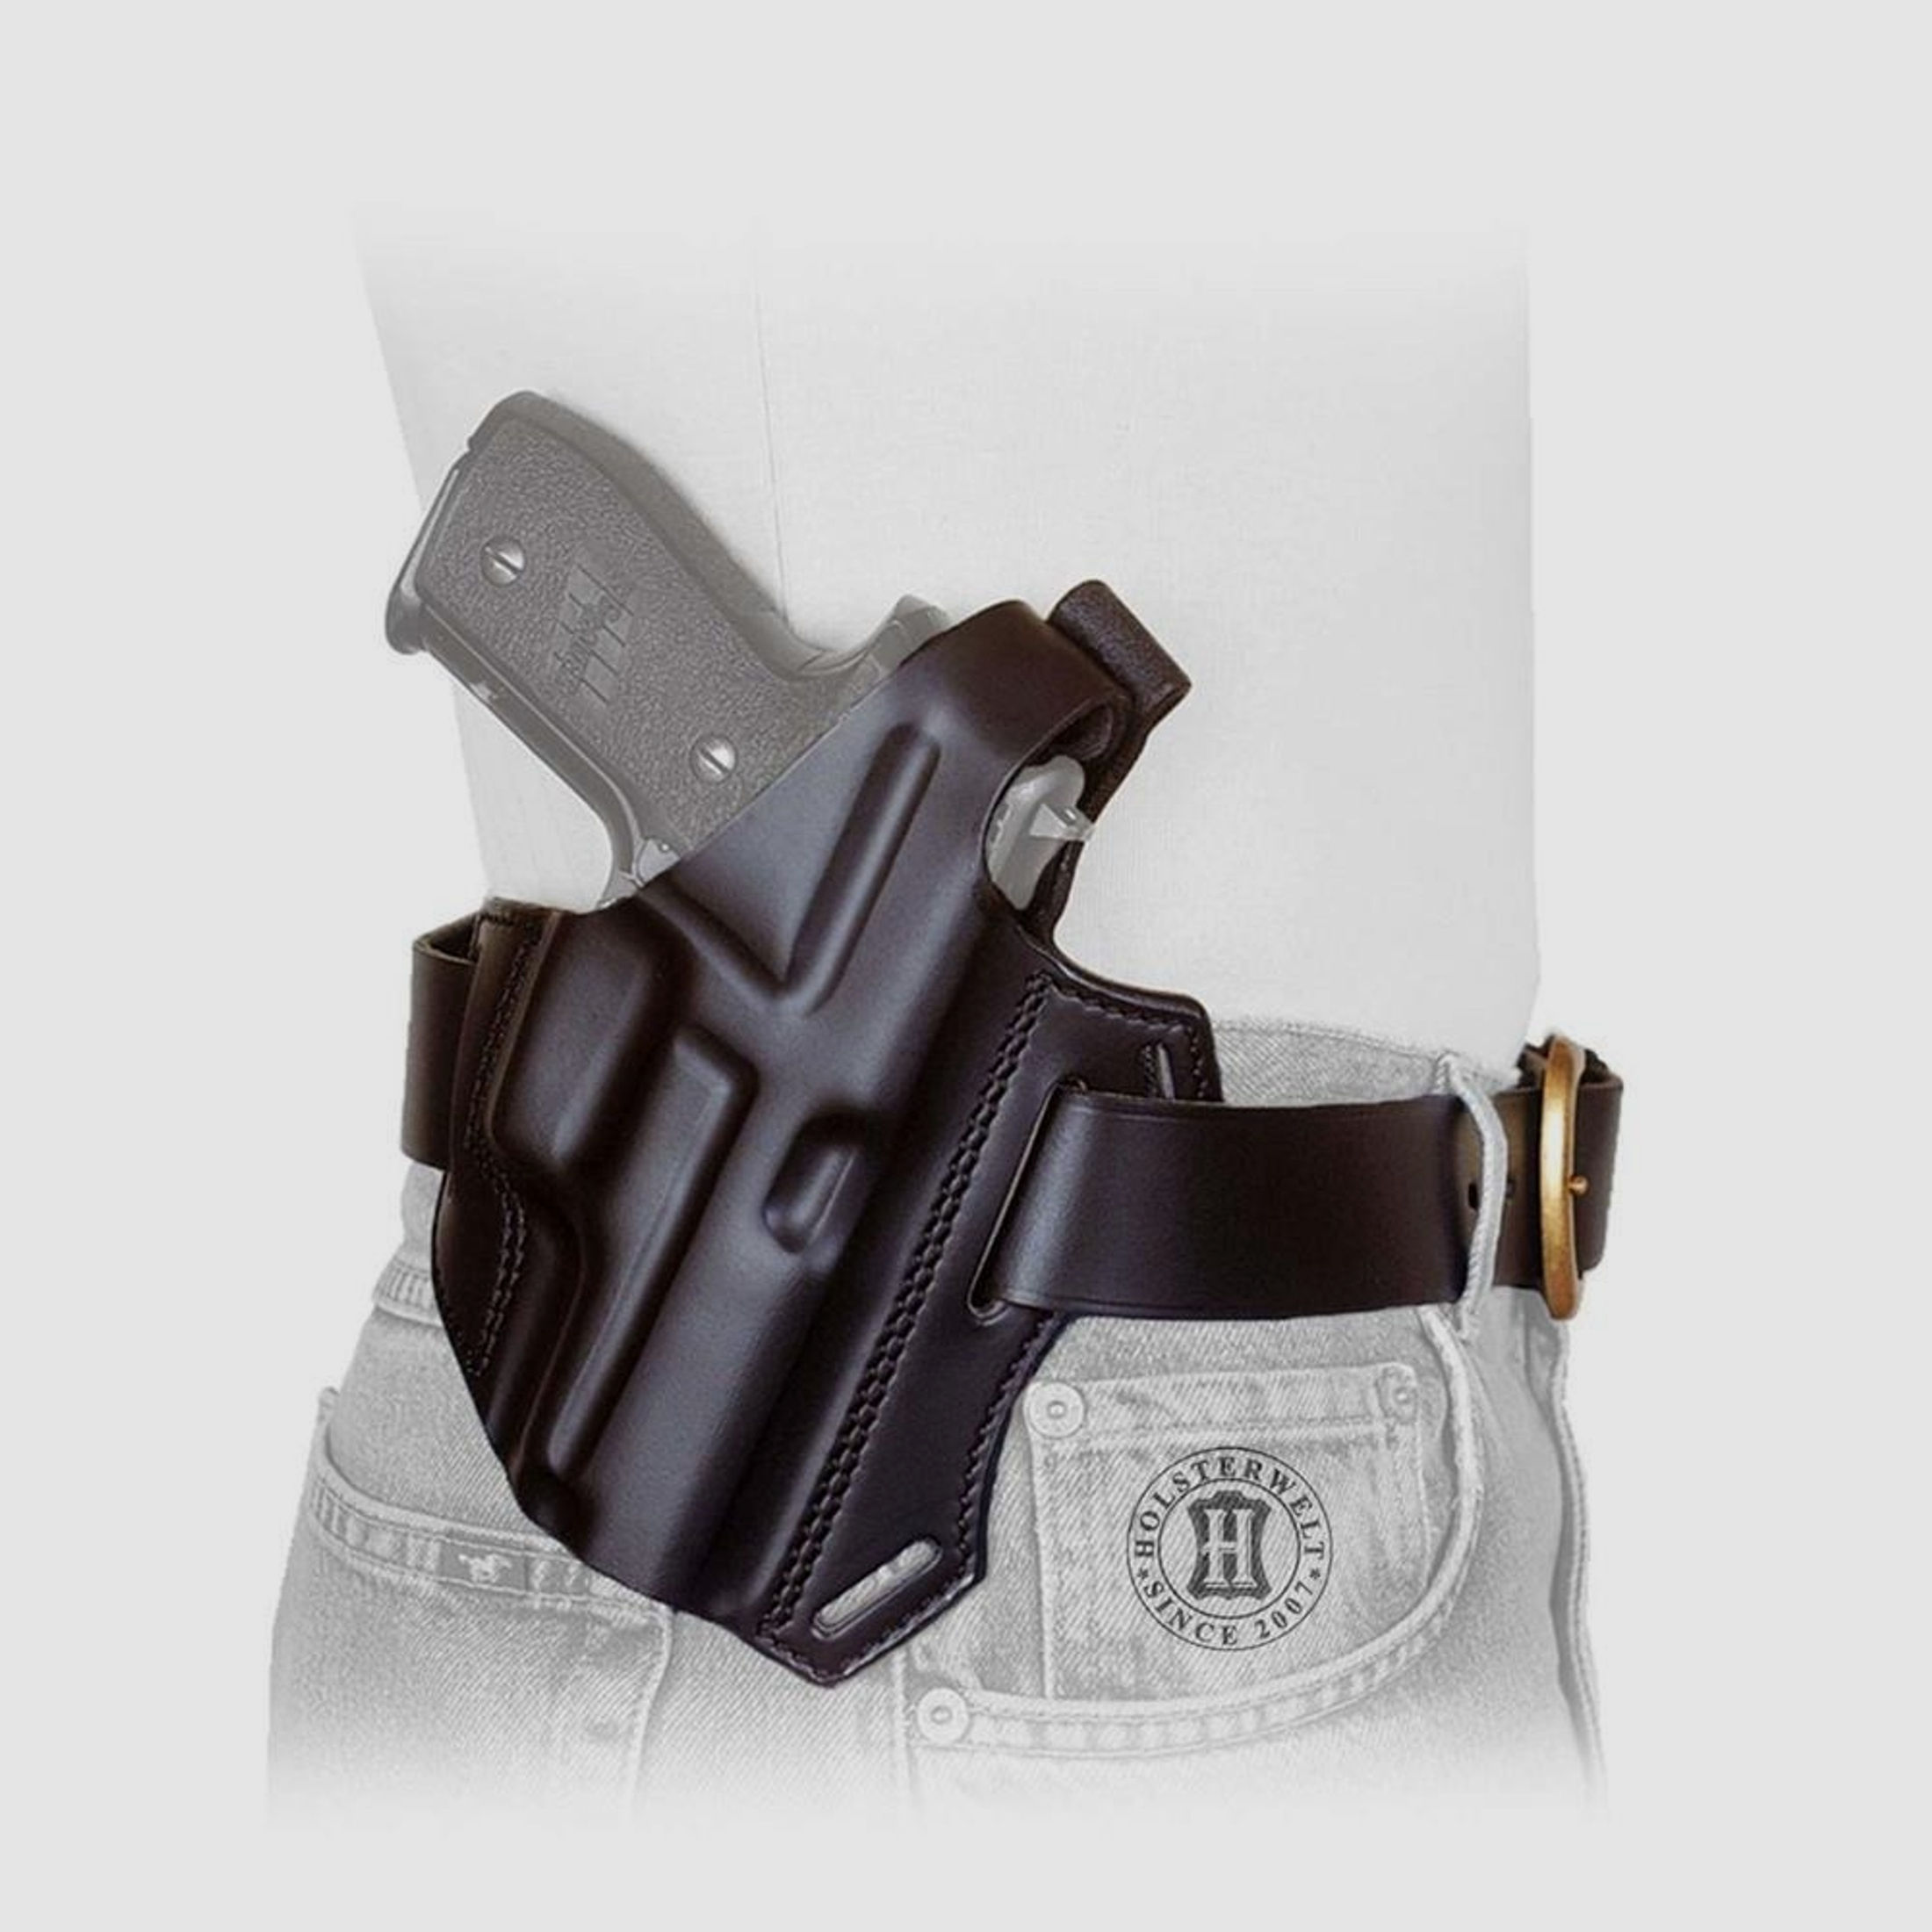 Gürtelholster / Schulterholster MULTI VARIO Glock 20/21/29/30, Zoraki 917-Schwarz-Rechtshänder